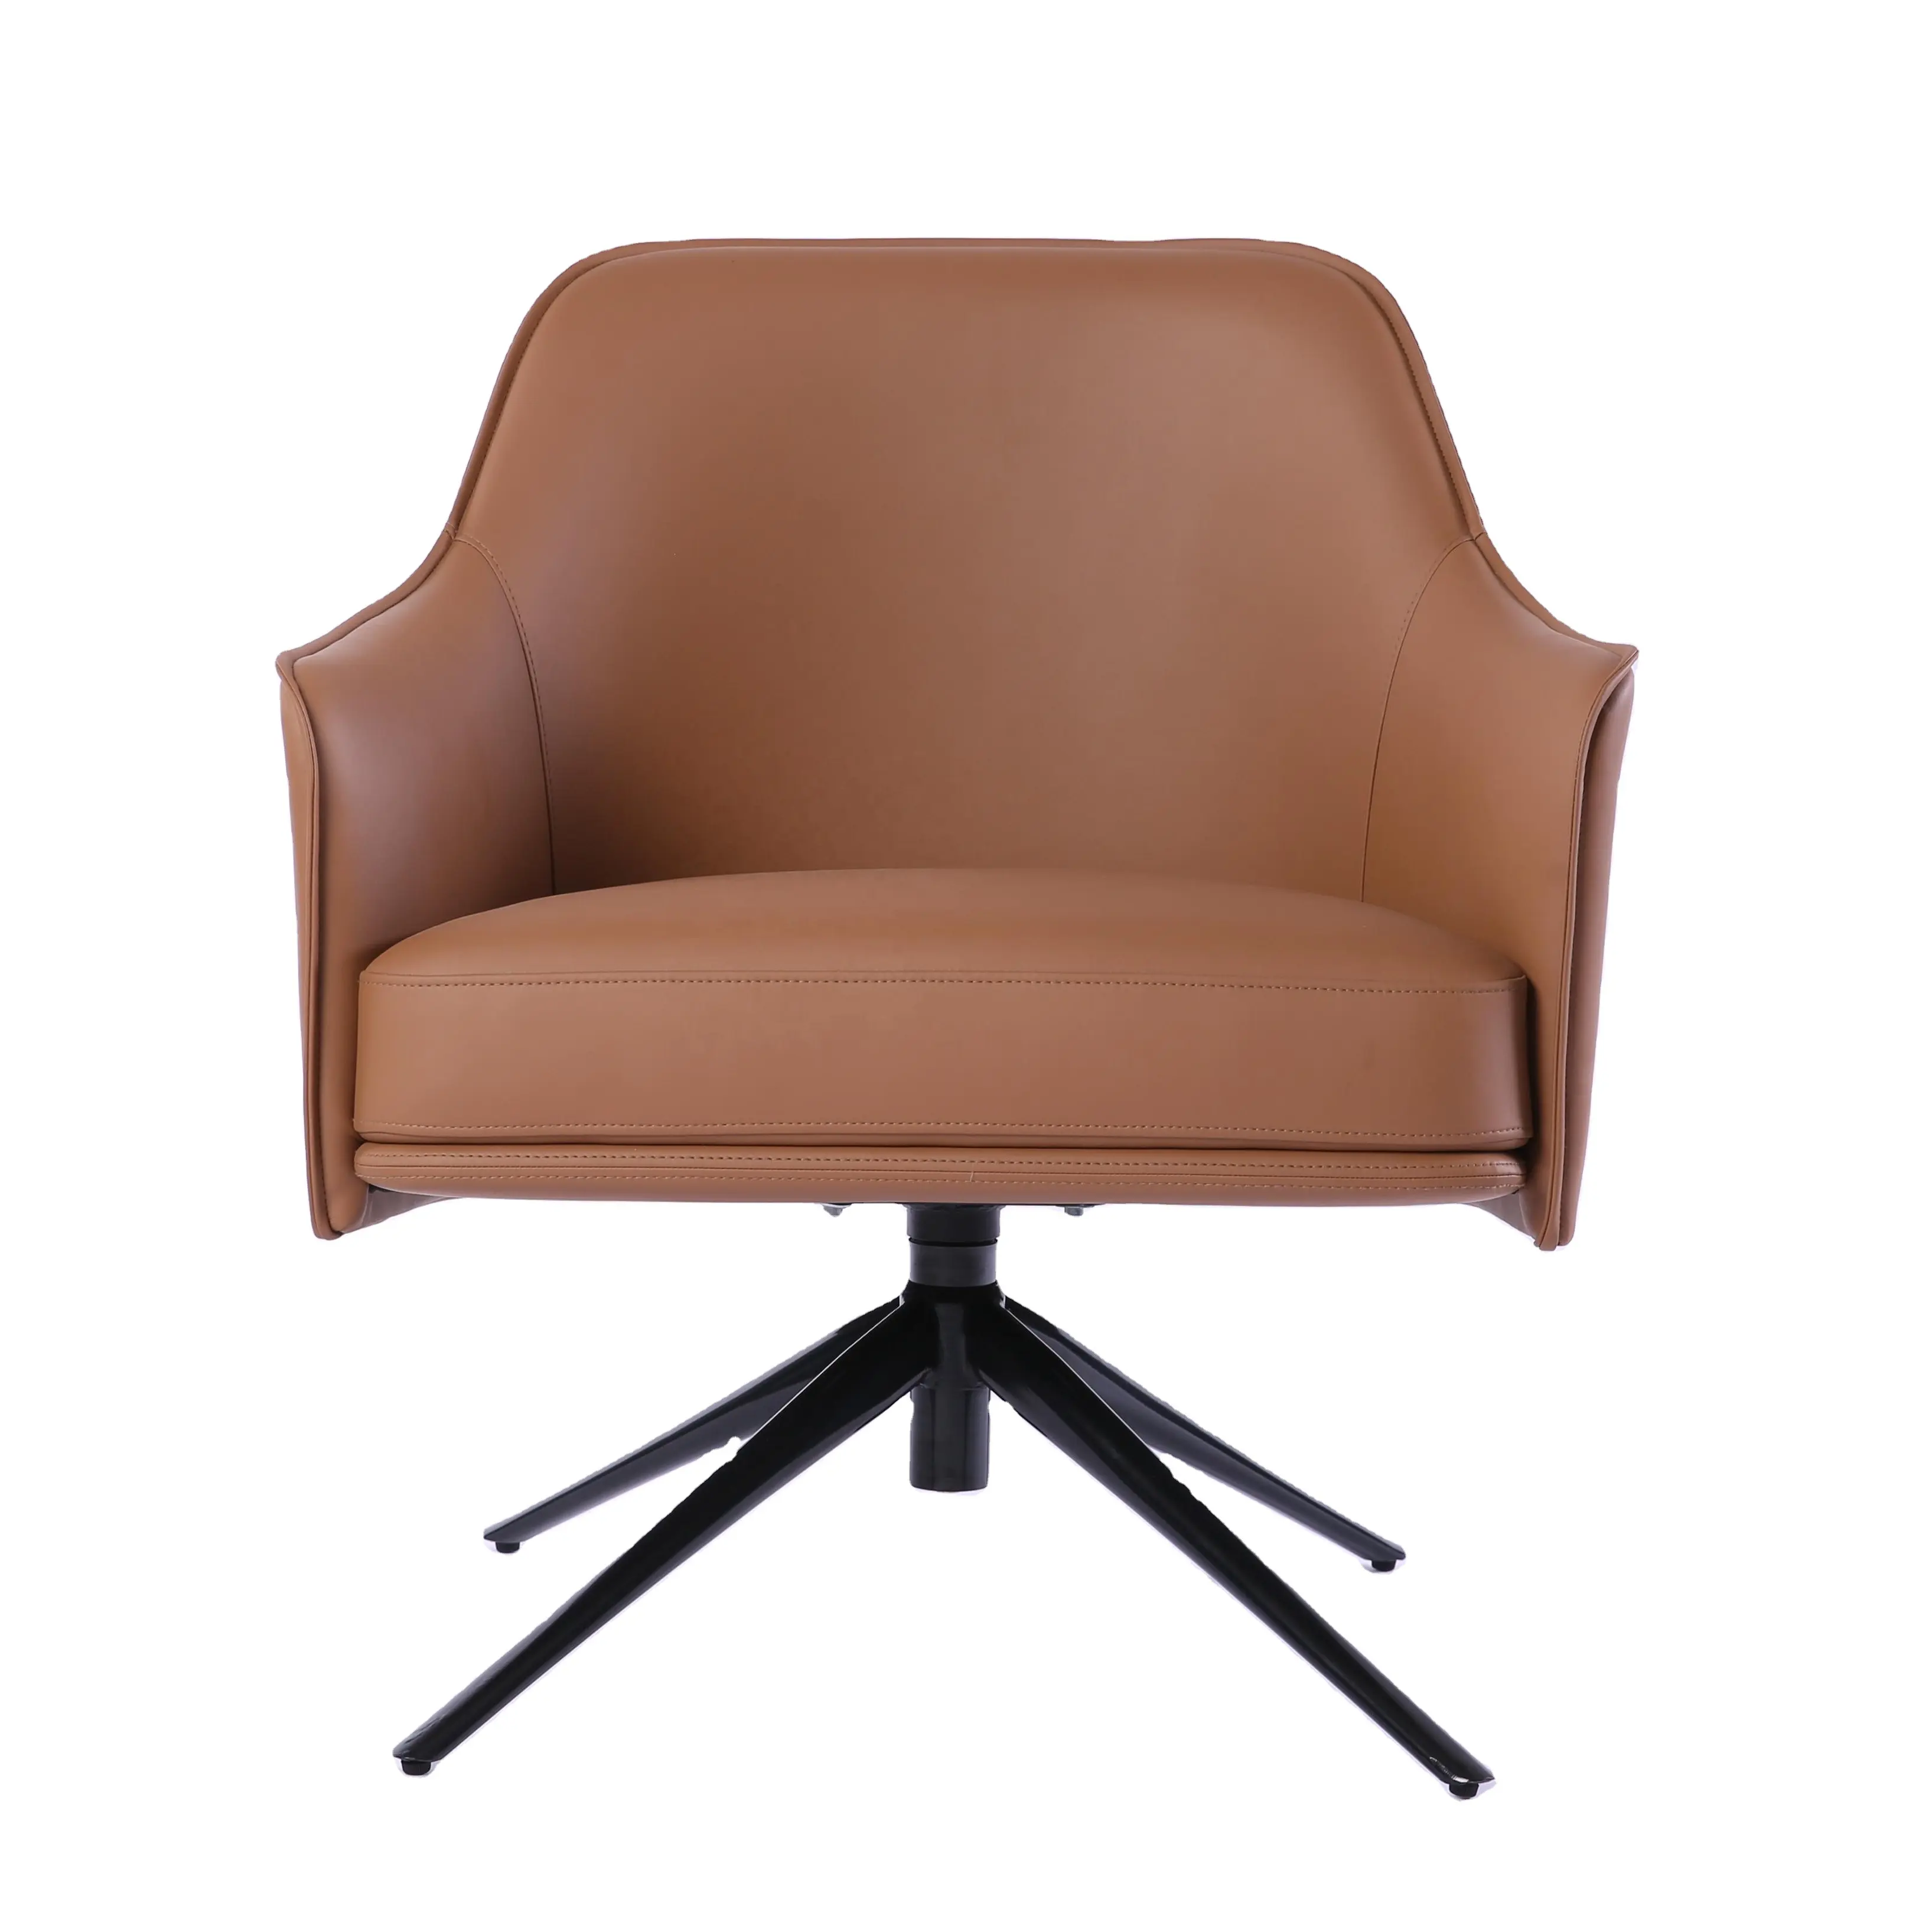 Mobili classici per la casa di lusso sedie a sdraio in pelle moderna per il tempo libero marrone poltrona soggiorno